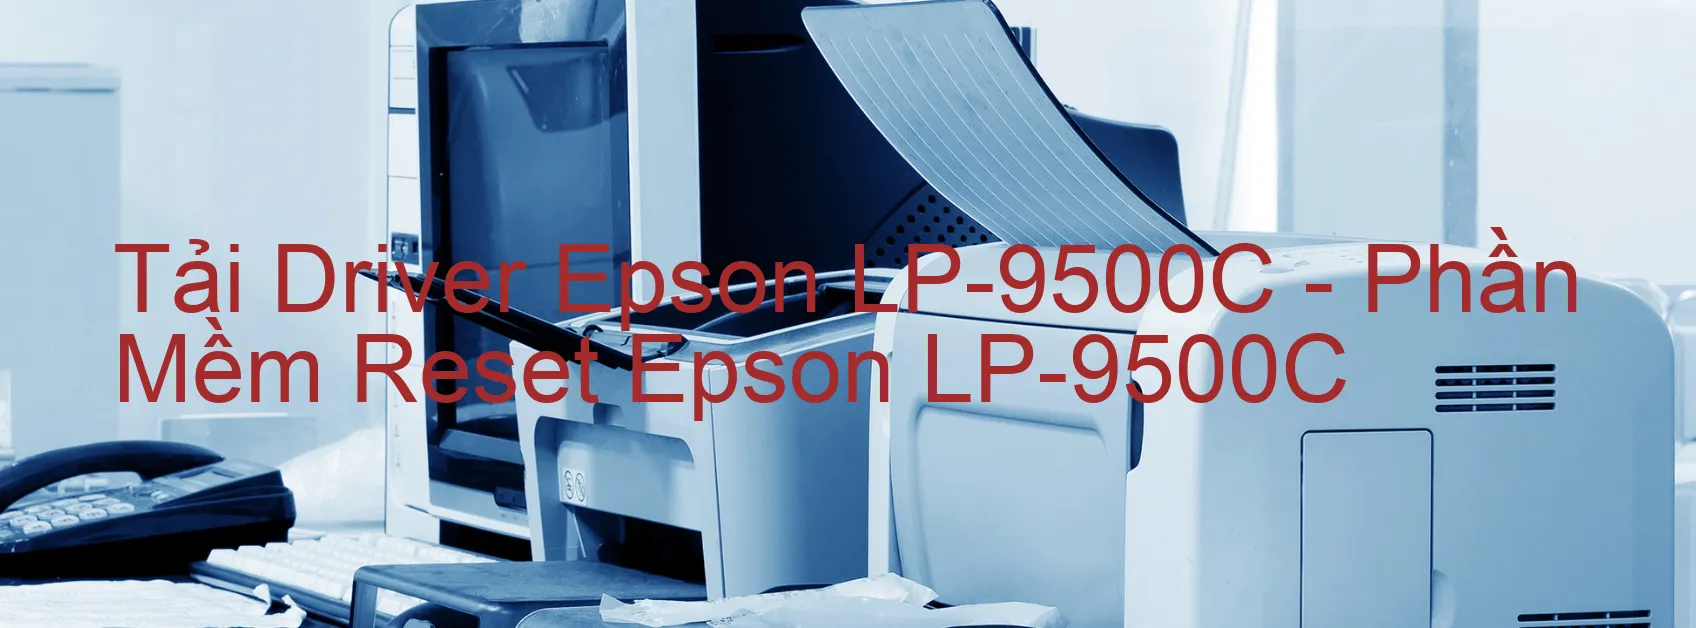 Driver Epson LP-9500C, Phần Mềm Reset Epson LP-9500C